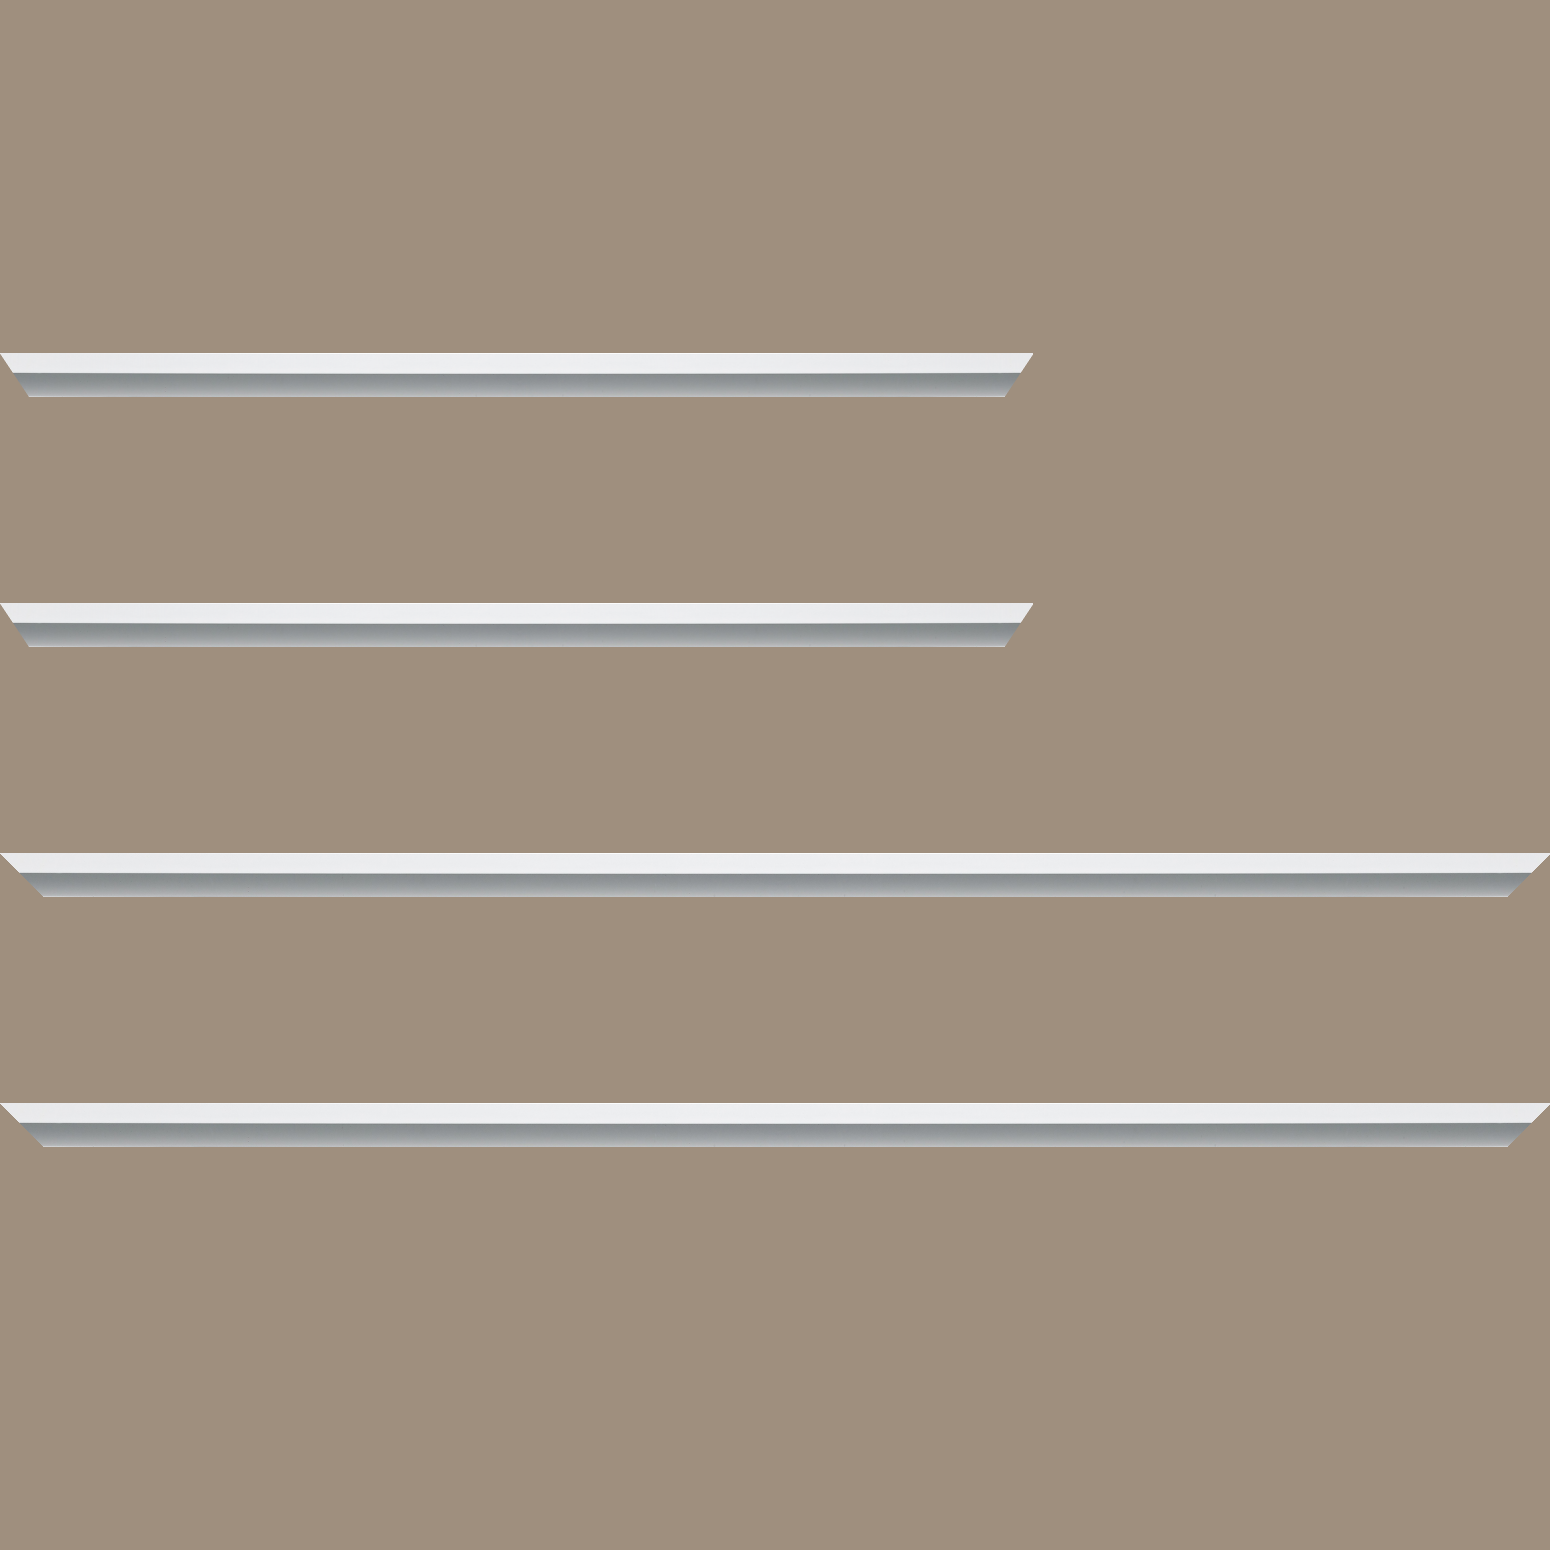 Baguette aluminium profil plat largeur 7mm, couleur blanc mat ,(le sujet qui sera glissé dans le cadre sera en retrait de 9mm de la face du cadre assurant un effet très contemporain) mise en place du sujet rapide et simple: assemblage du cadre par double équerre à vis (livré avec le système d'accrochage qui se glisse dans le profilé) encadrement non assemblé,  livré avec son sachet d'accessoires